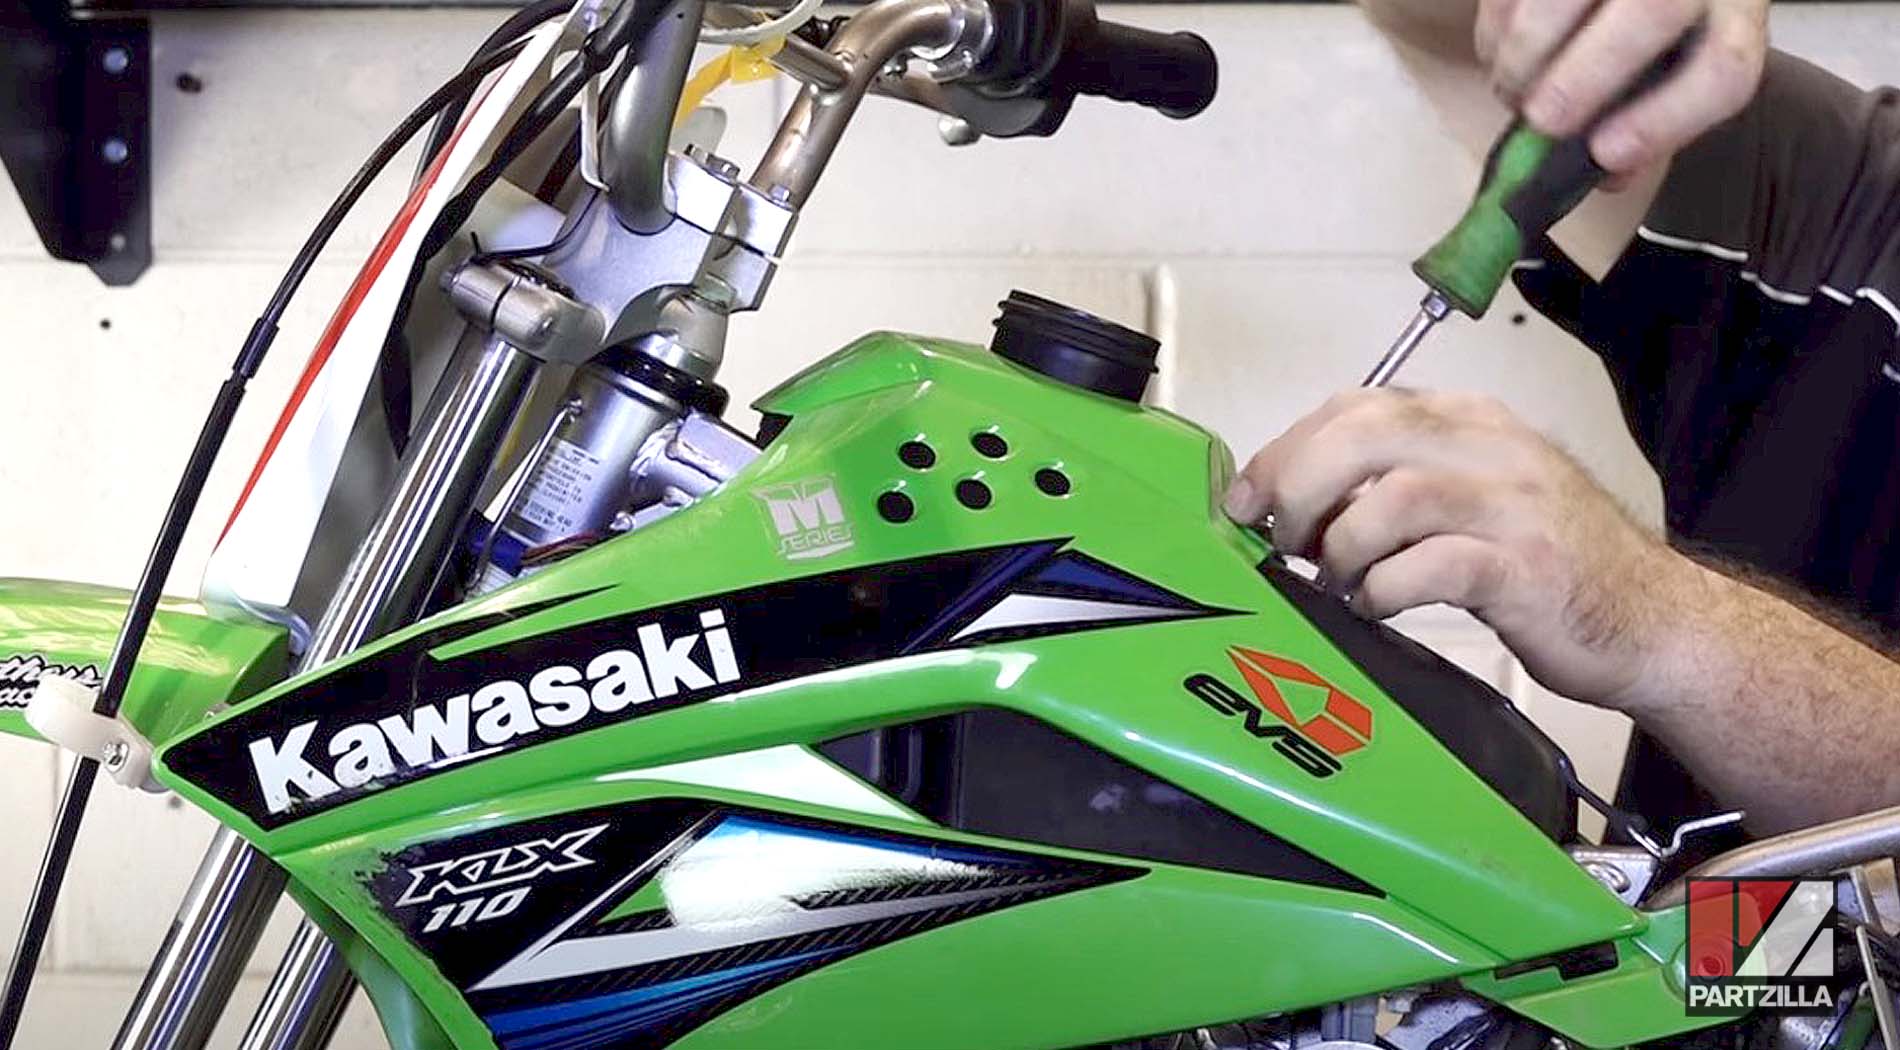 2015 Kawasaki KLX 110 motorcycle air filter change